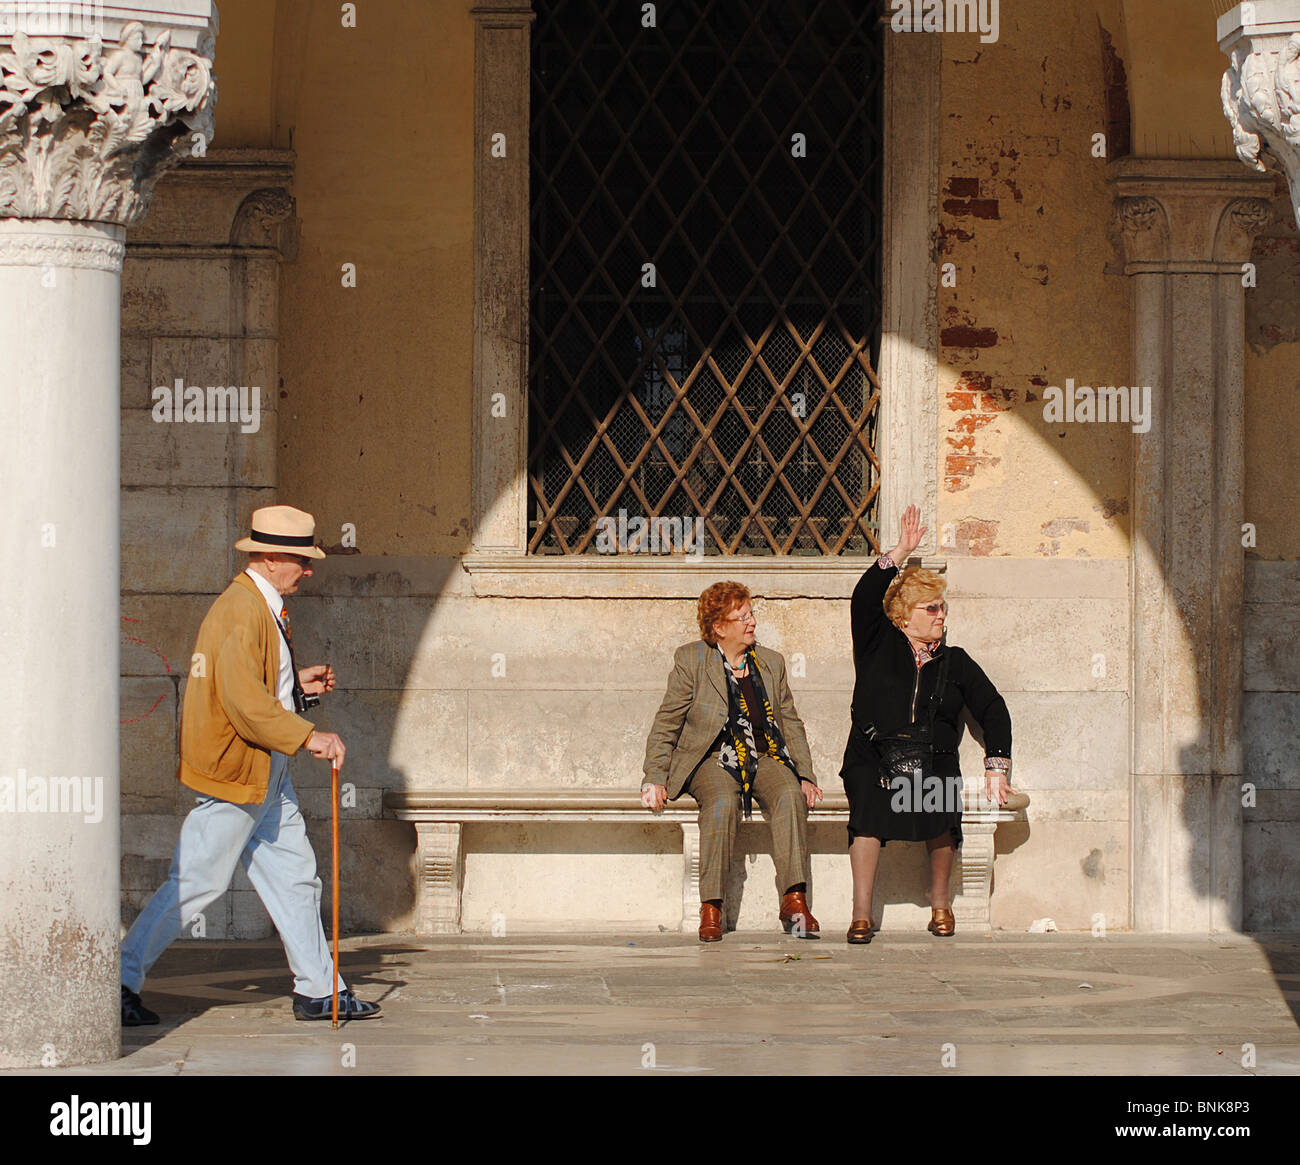 Am Abend Schatten und ältere Menschen in Markusplatz entfernt, Venedig Italien Stockfoto